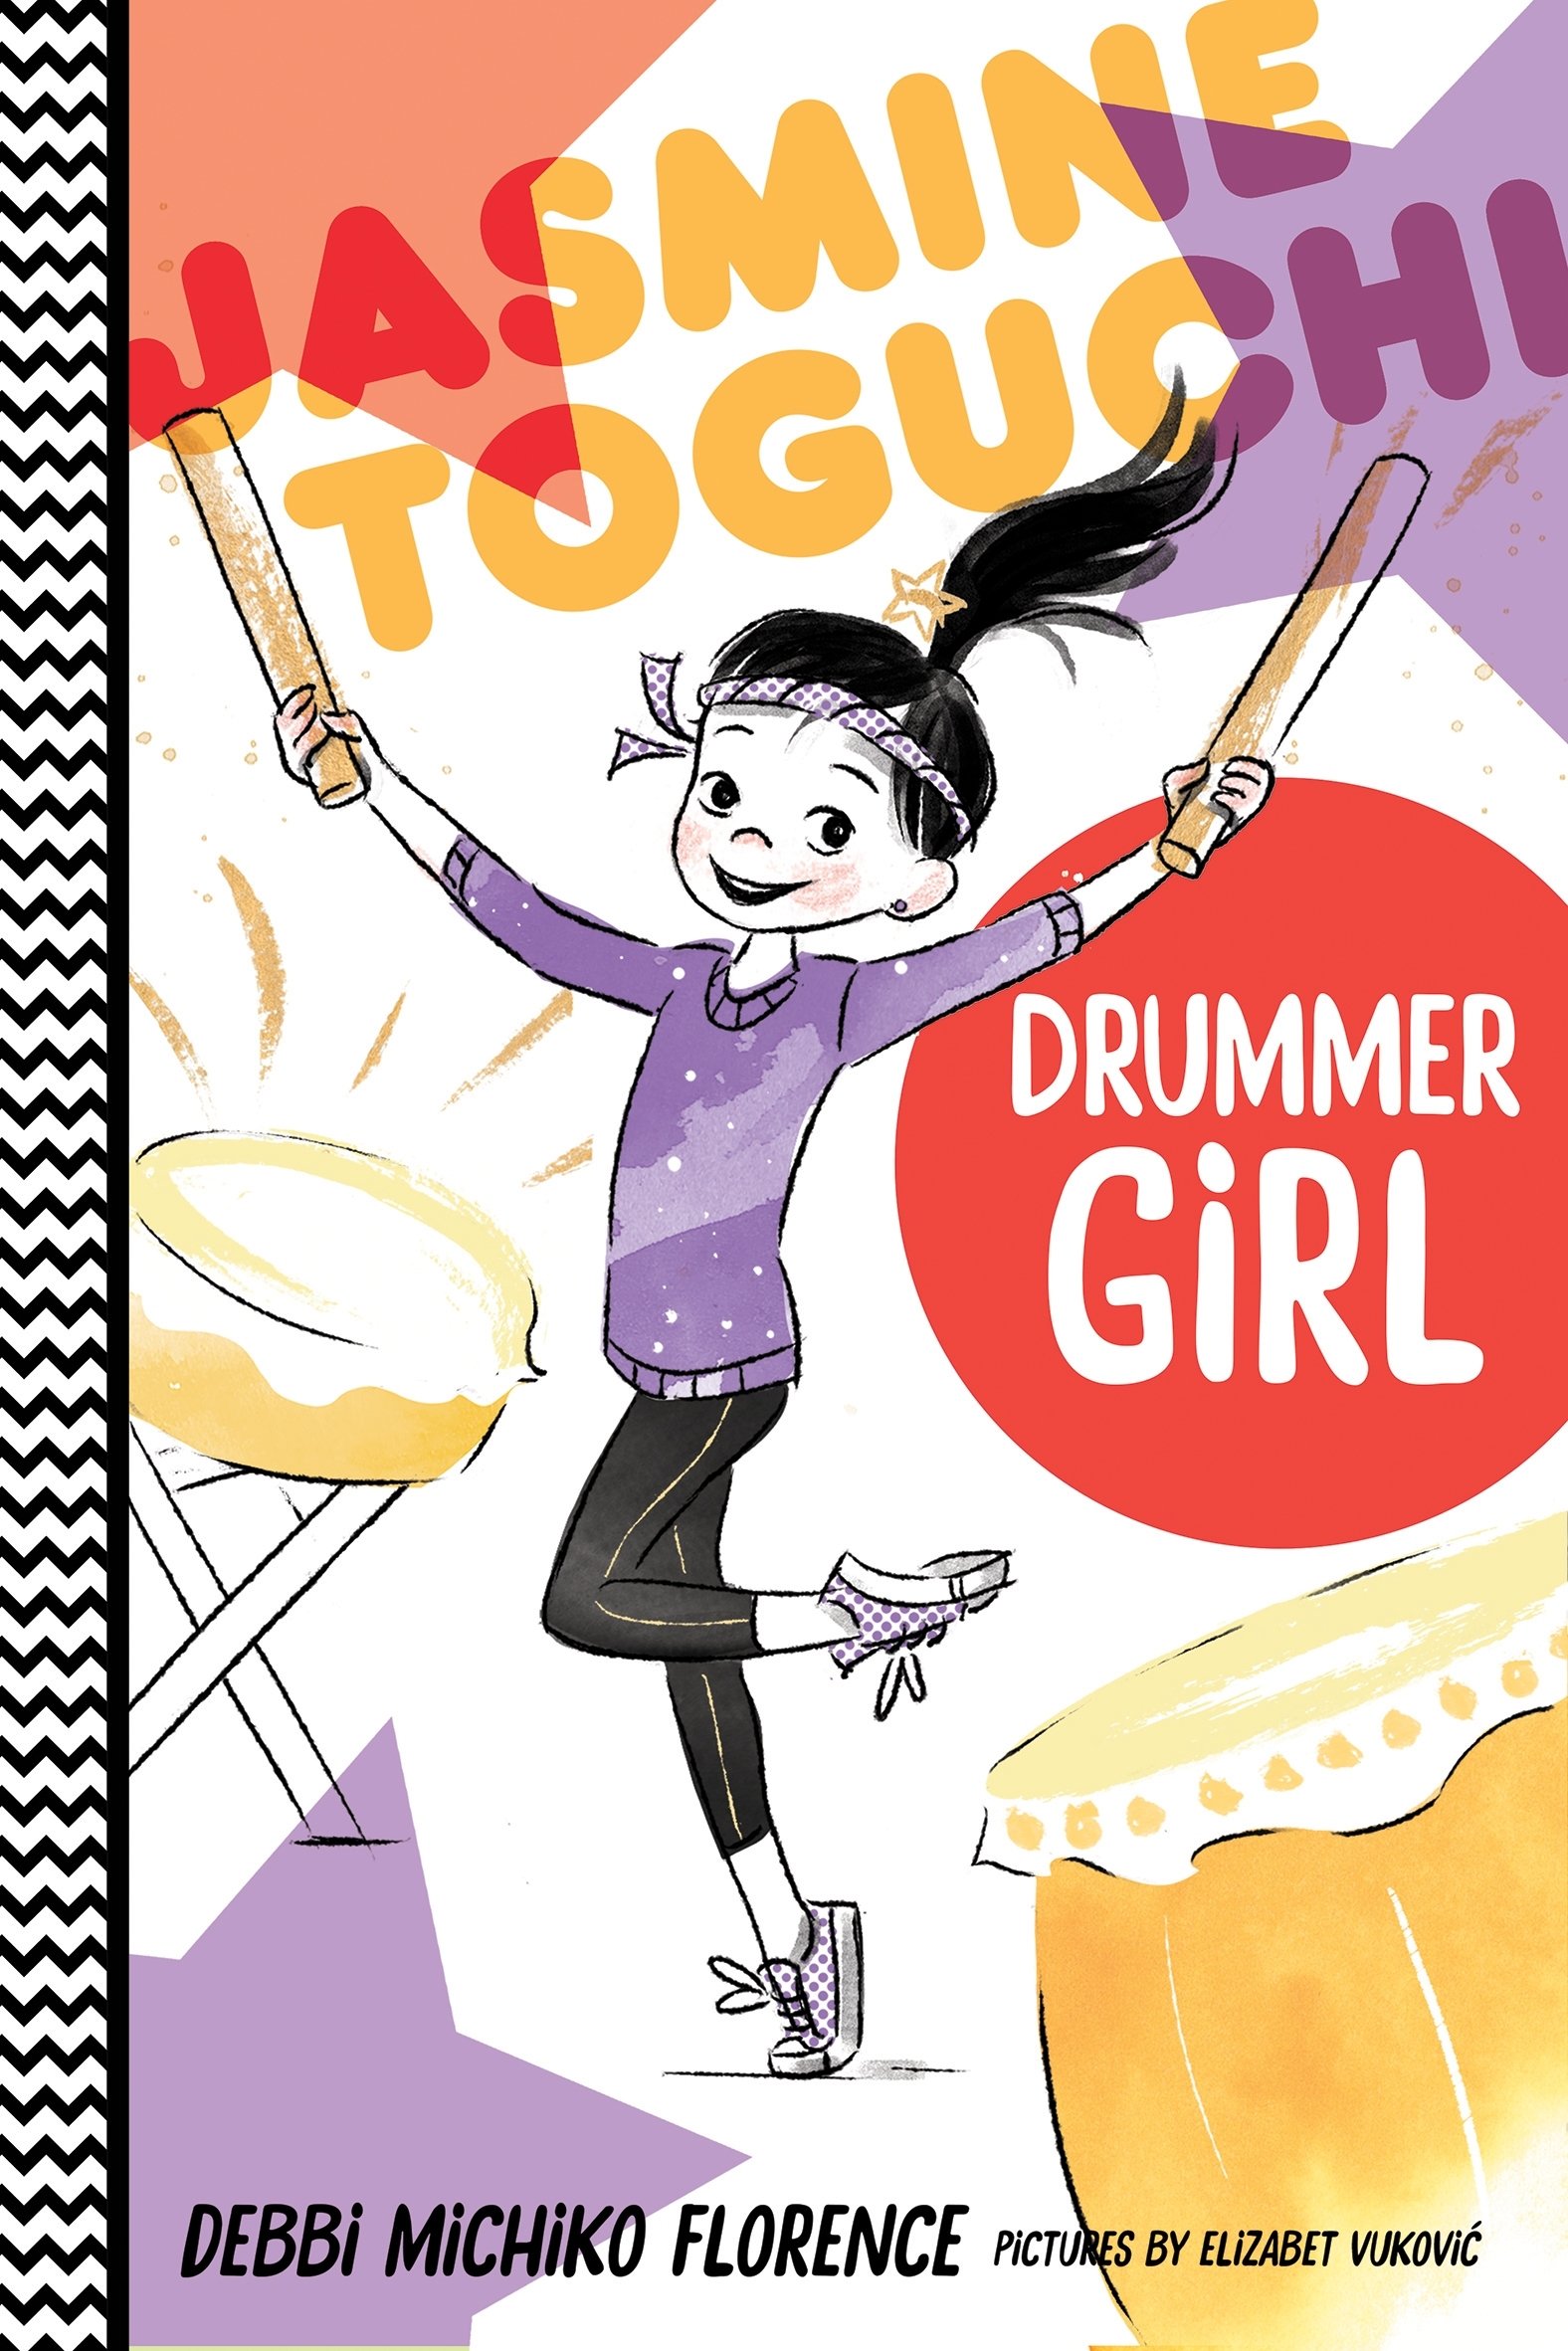  Jasmine Toguchi, Drummer Girl by Debbi M. Florence 